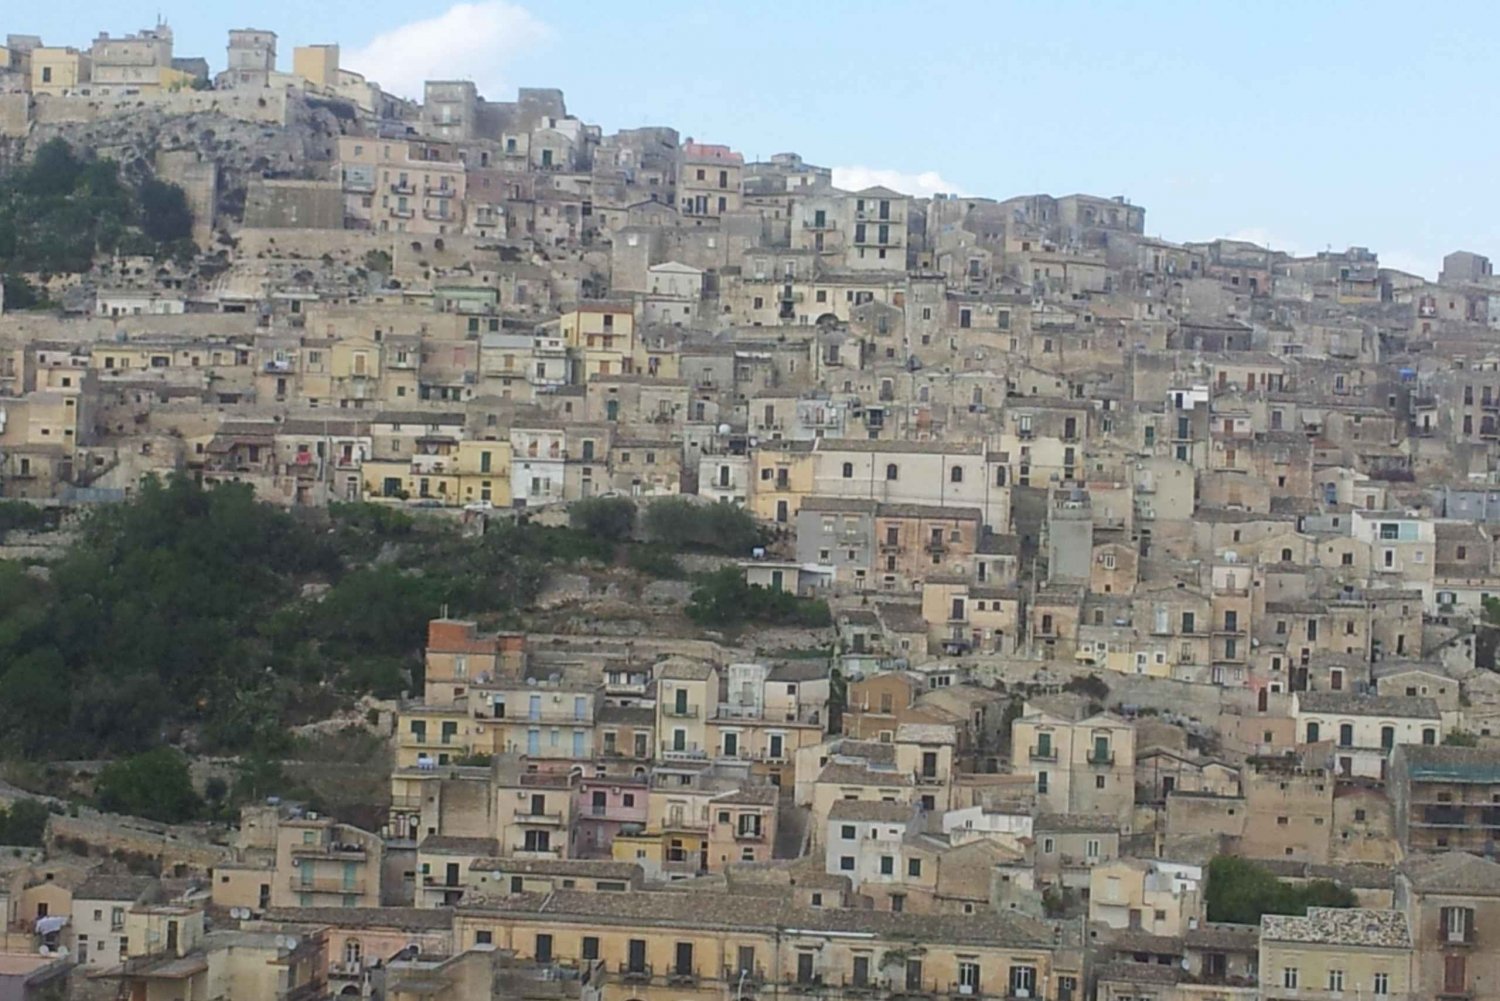 Noto, Modica och Ragusa: Barockturen från Catania